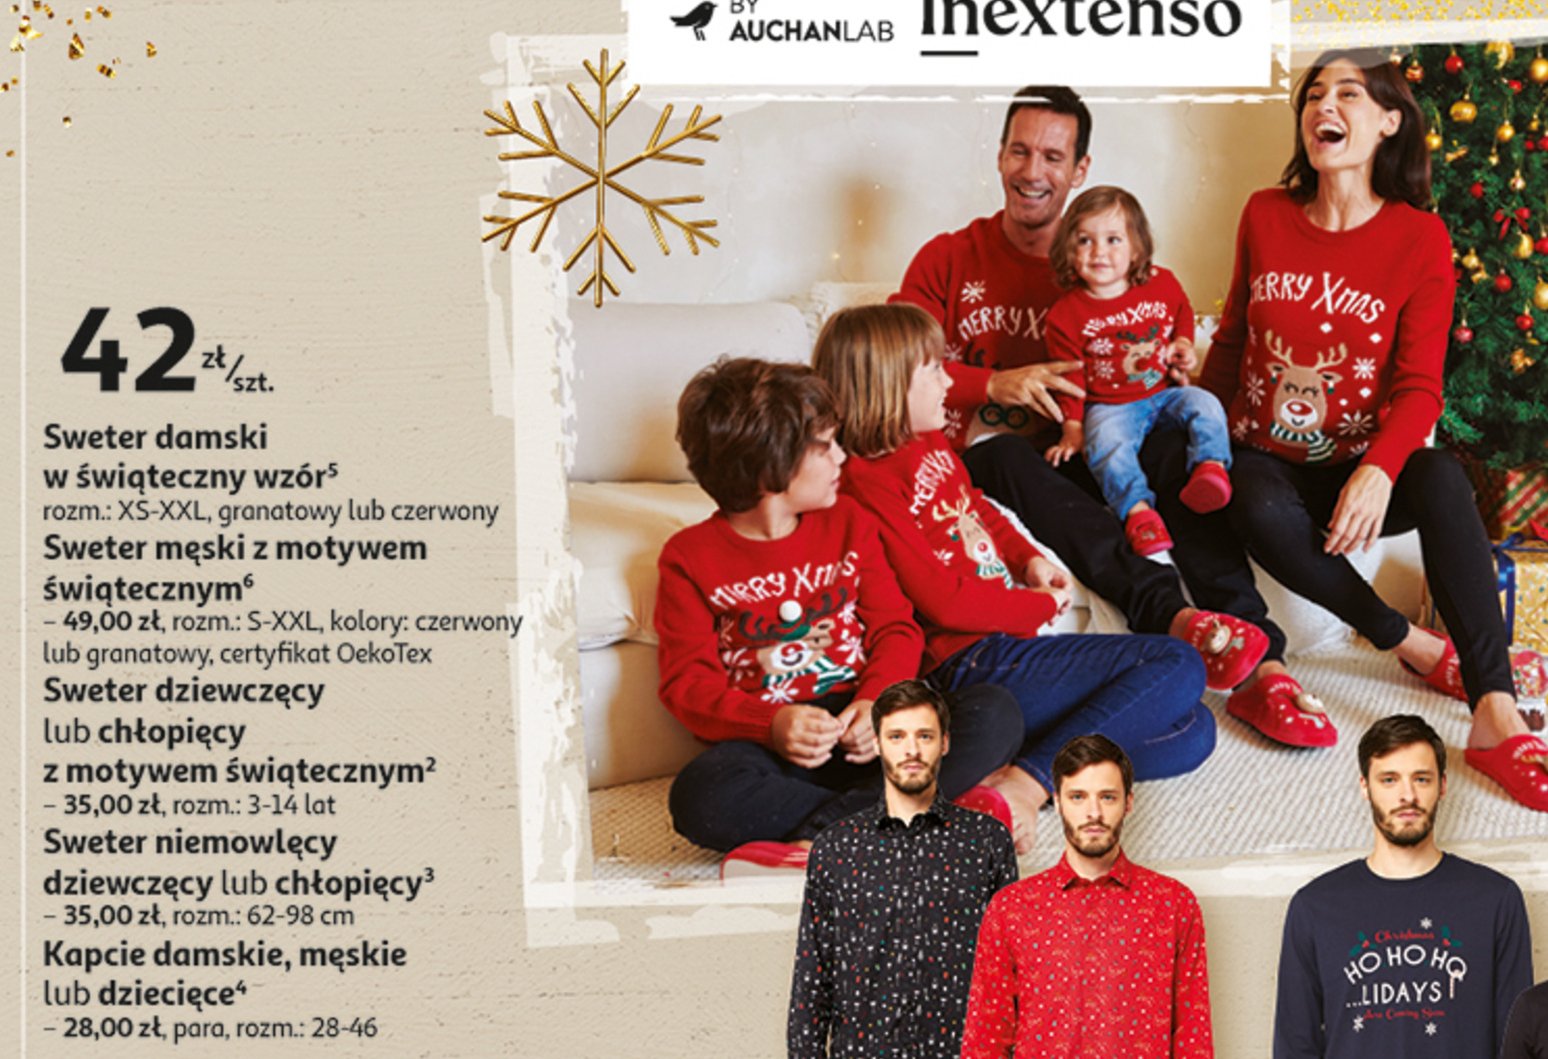 Sweter damski z nadrukiem świątecznym Auchan inextenso promocja